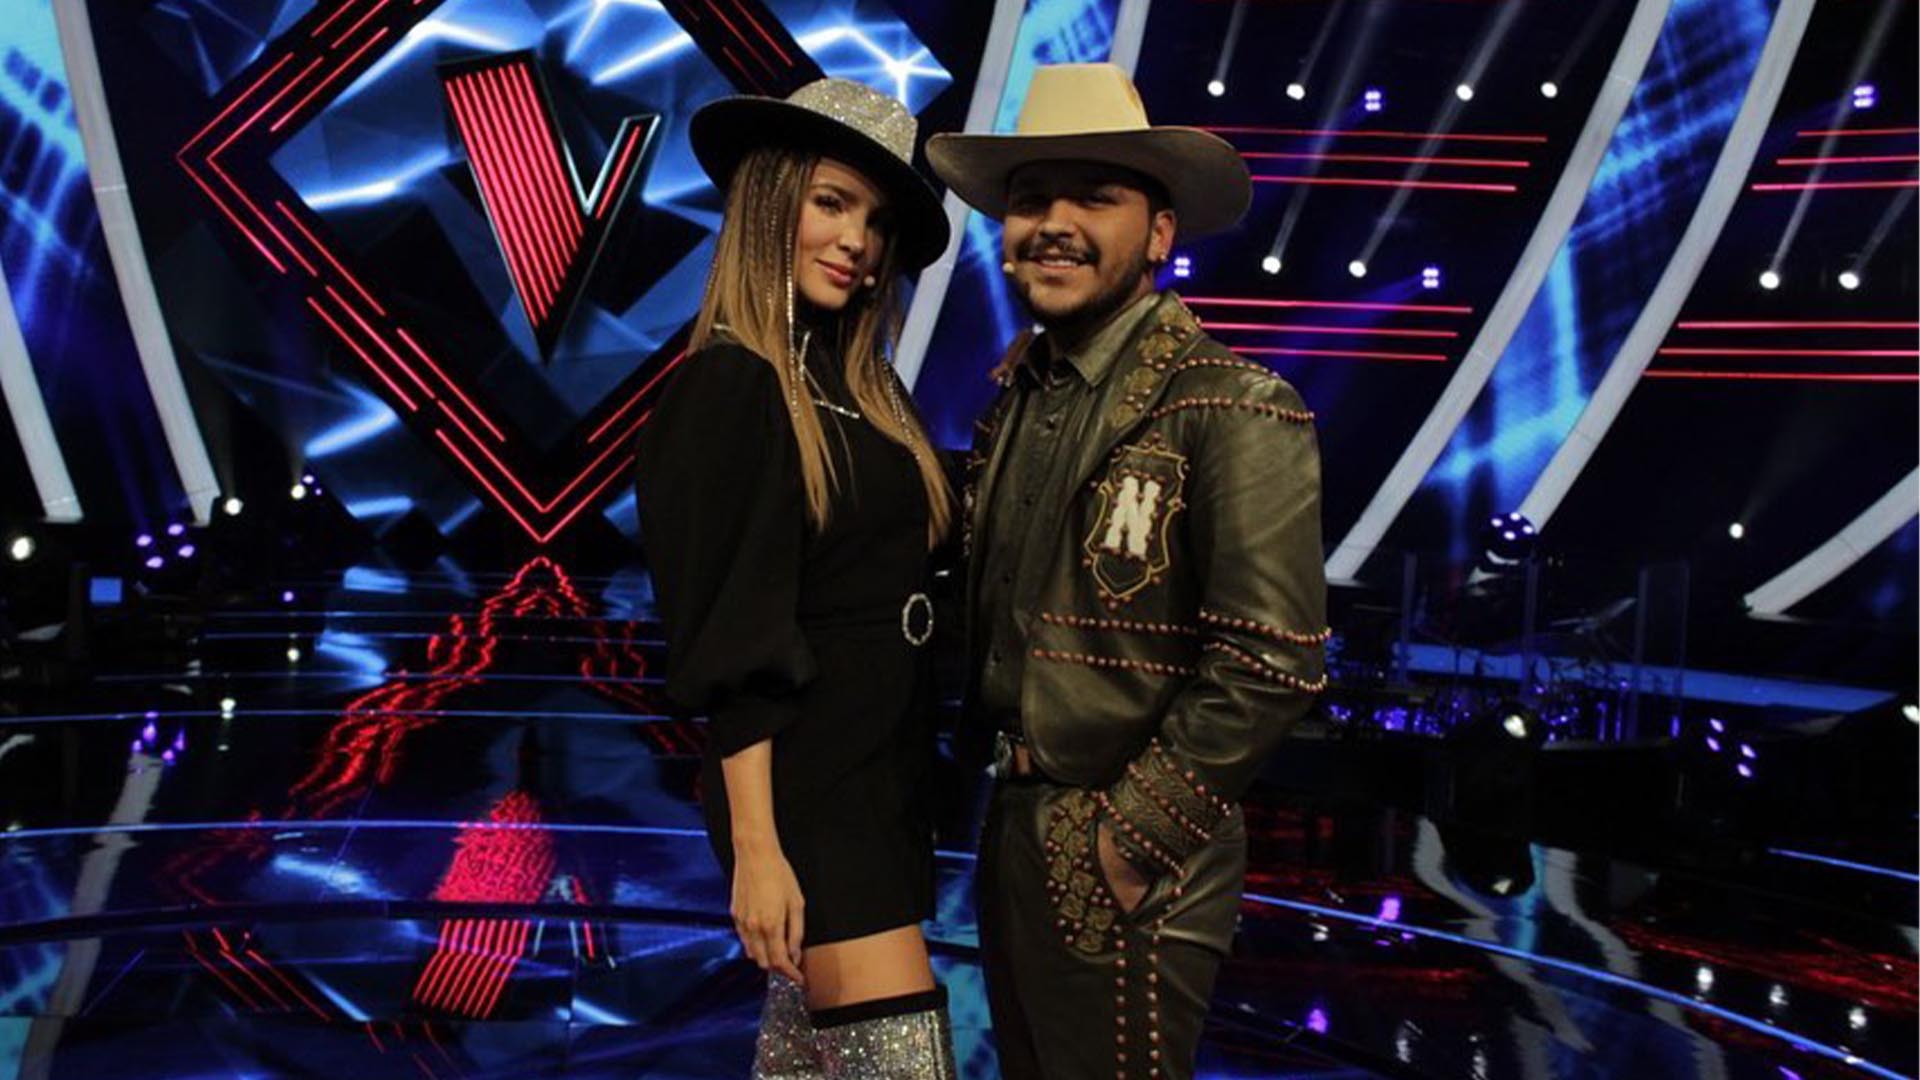 La pareja funge como coaches de la edición 2020 del programa La Voz México (Foto: Instagram@ lavoztvazteca)